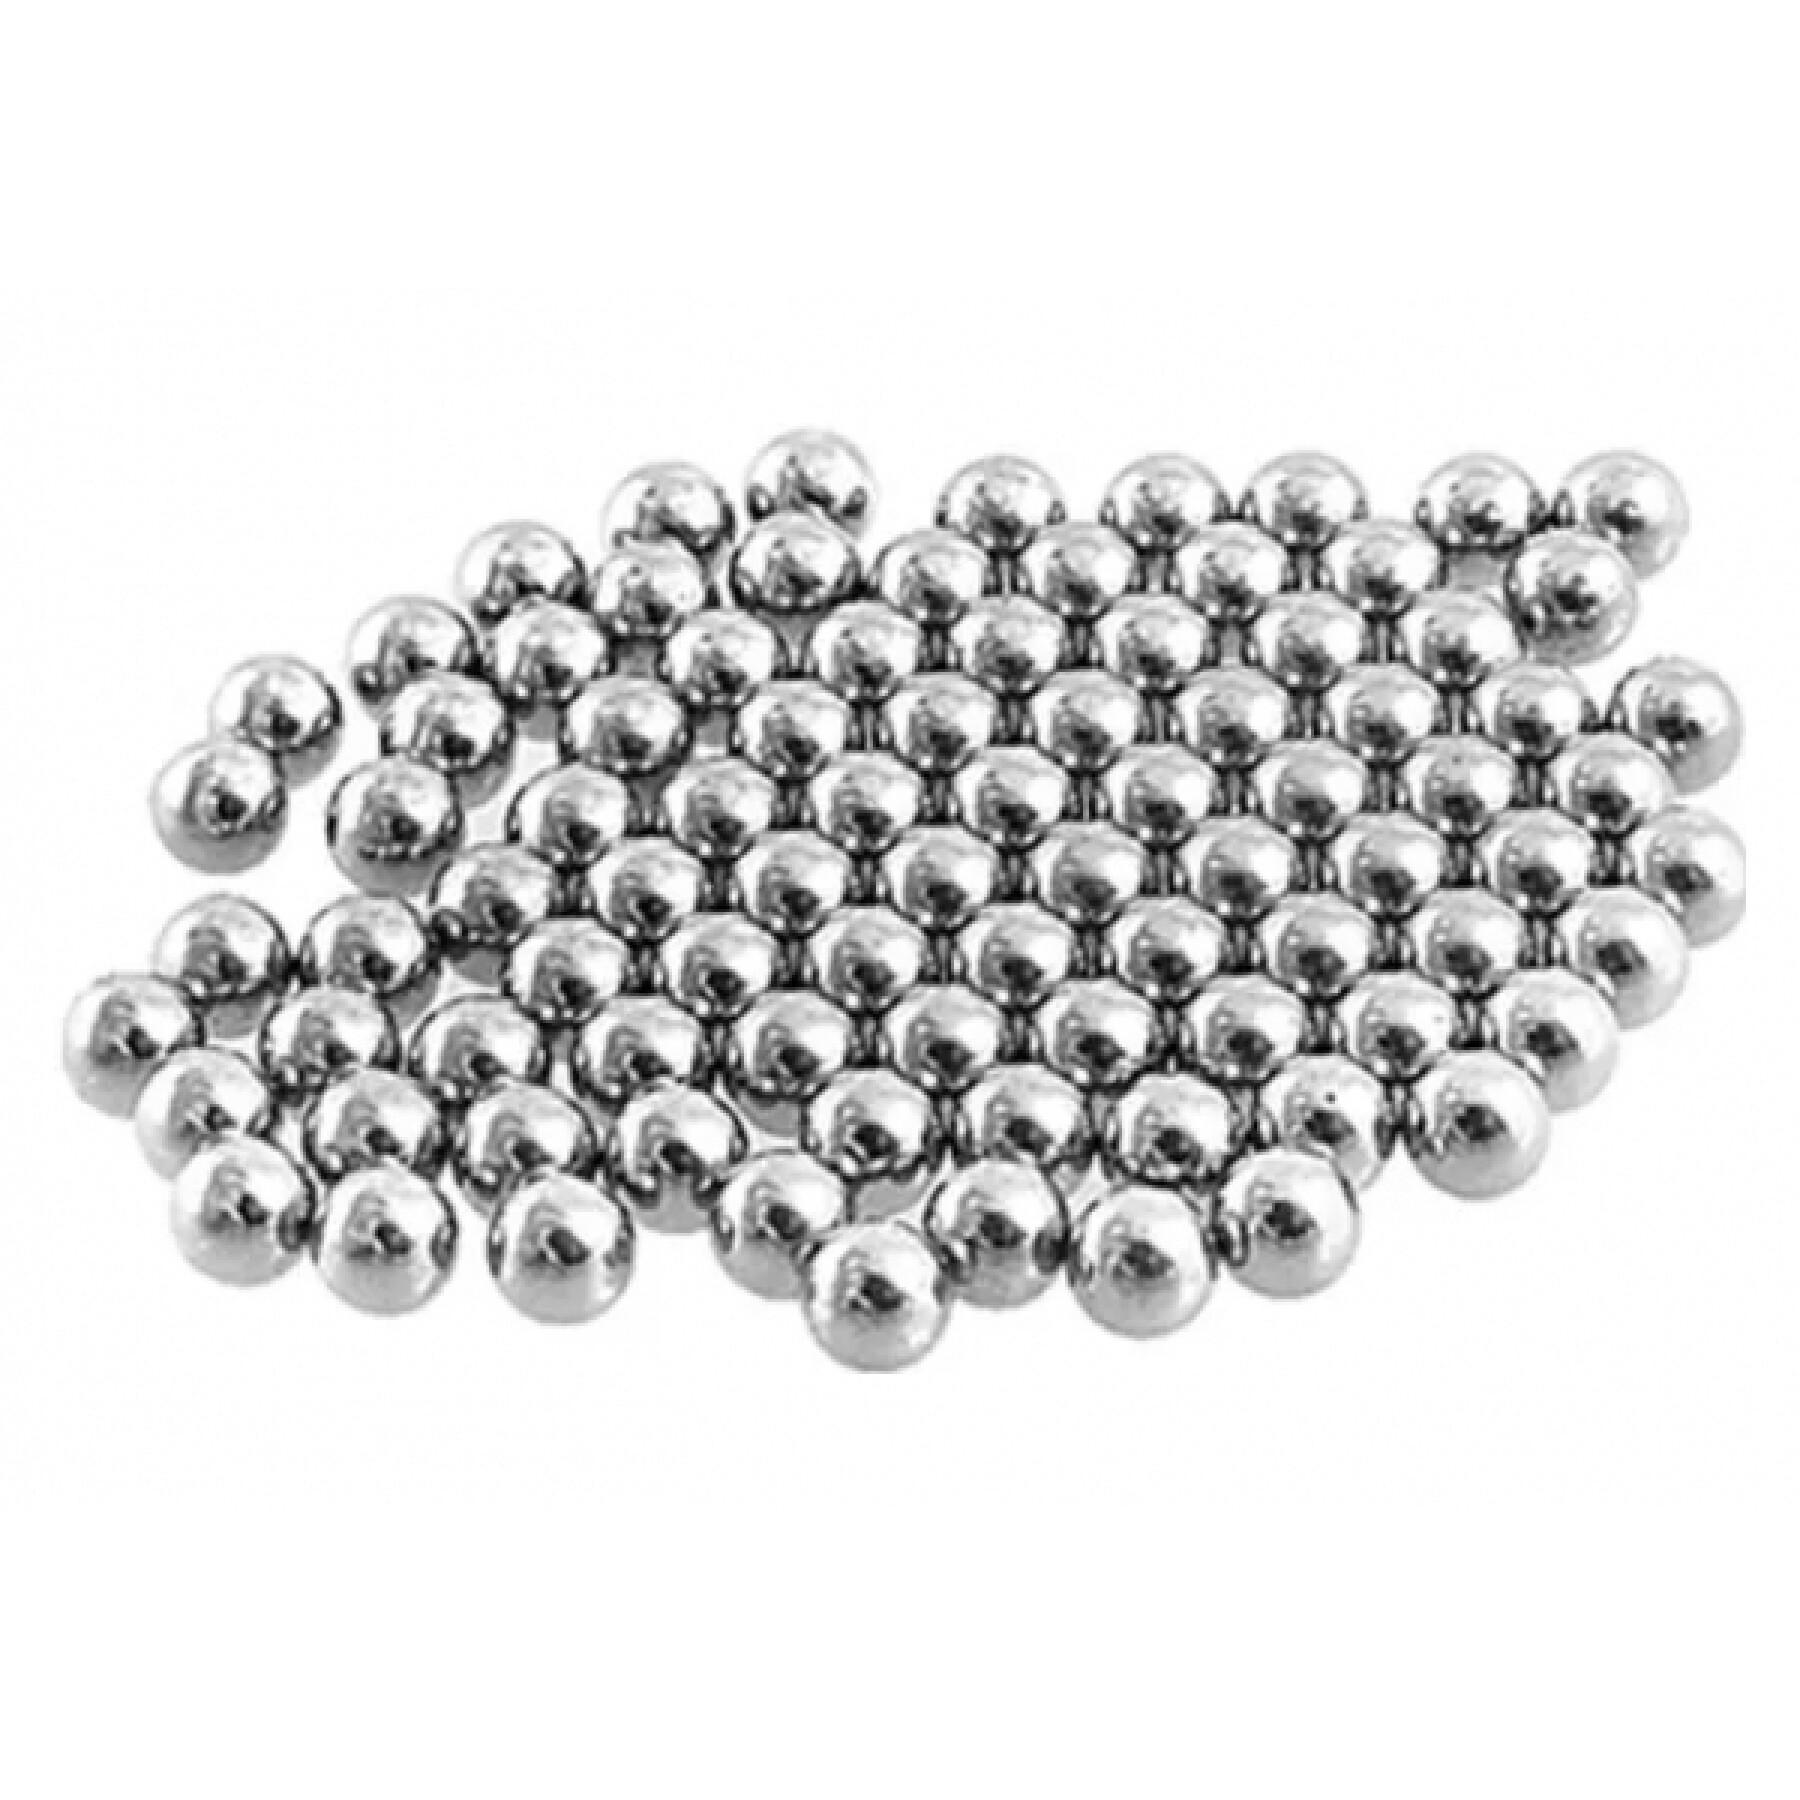 Batch of 100 bearing balls Elvedes 5/32"